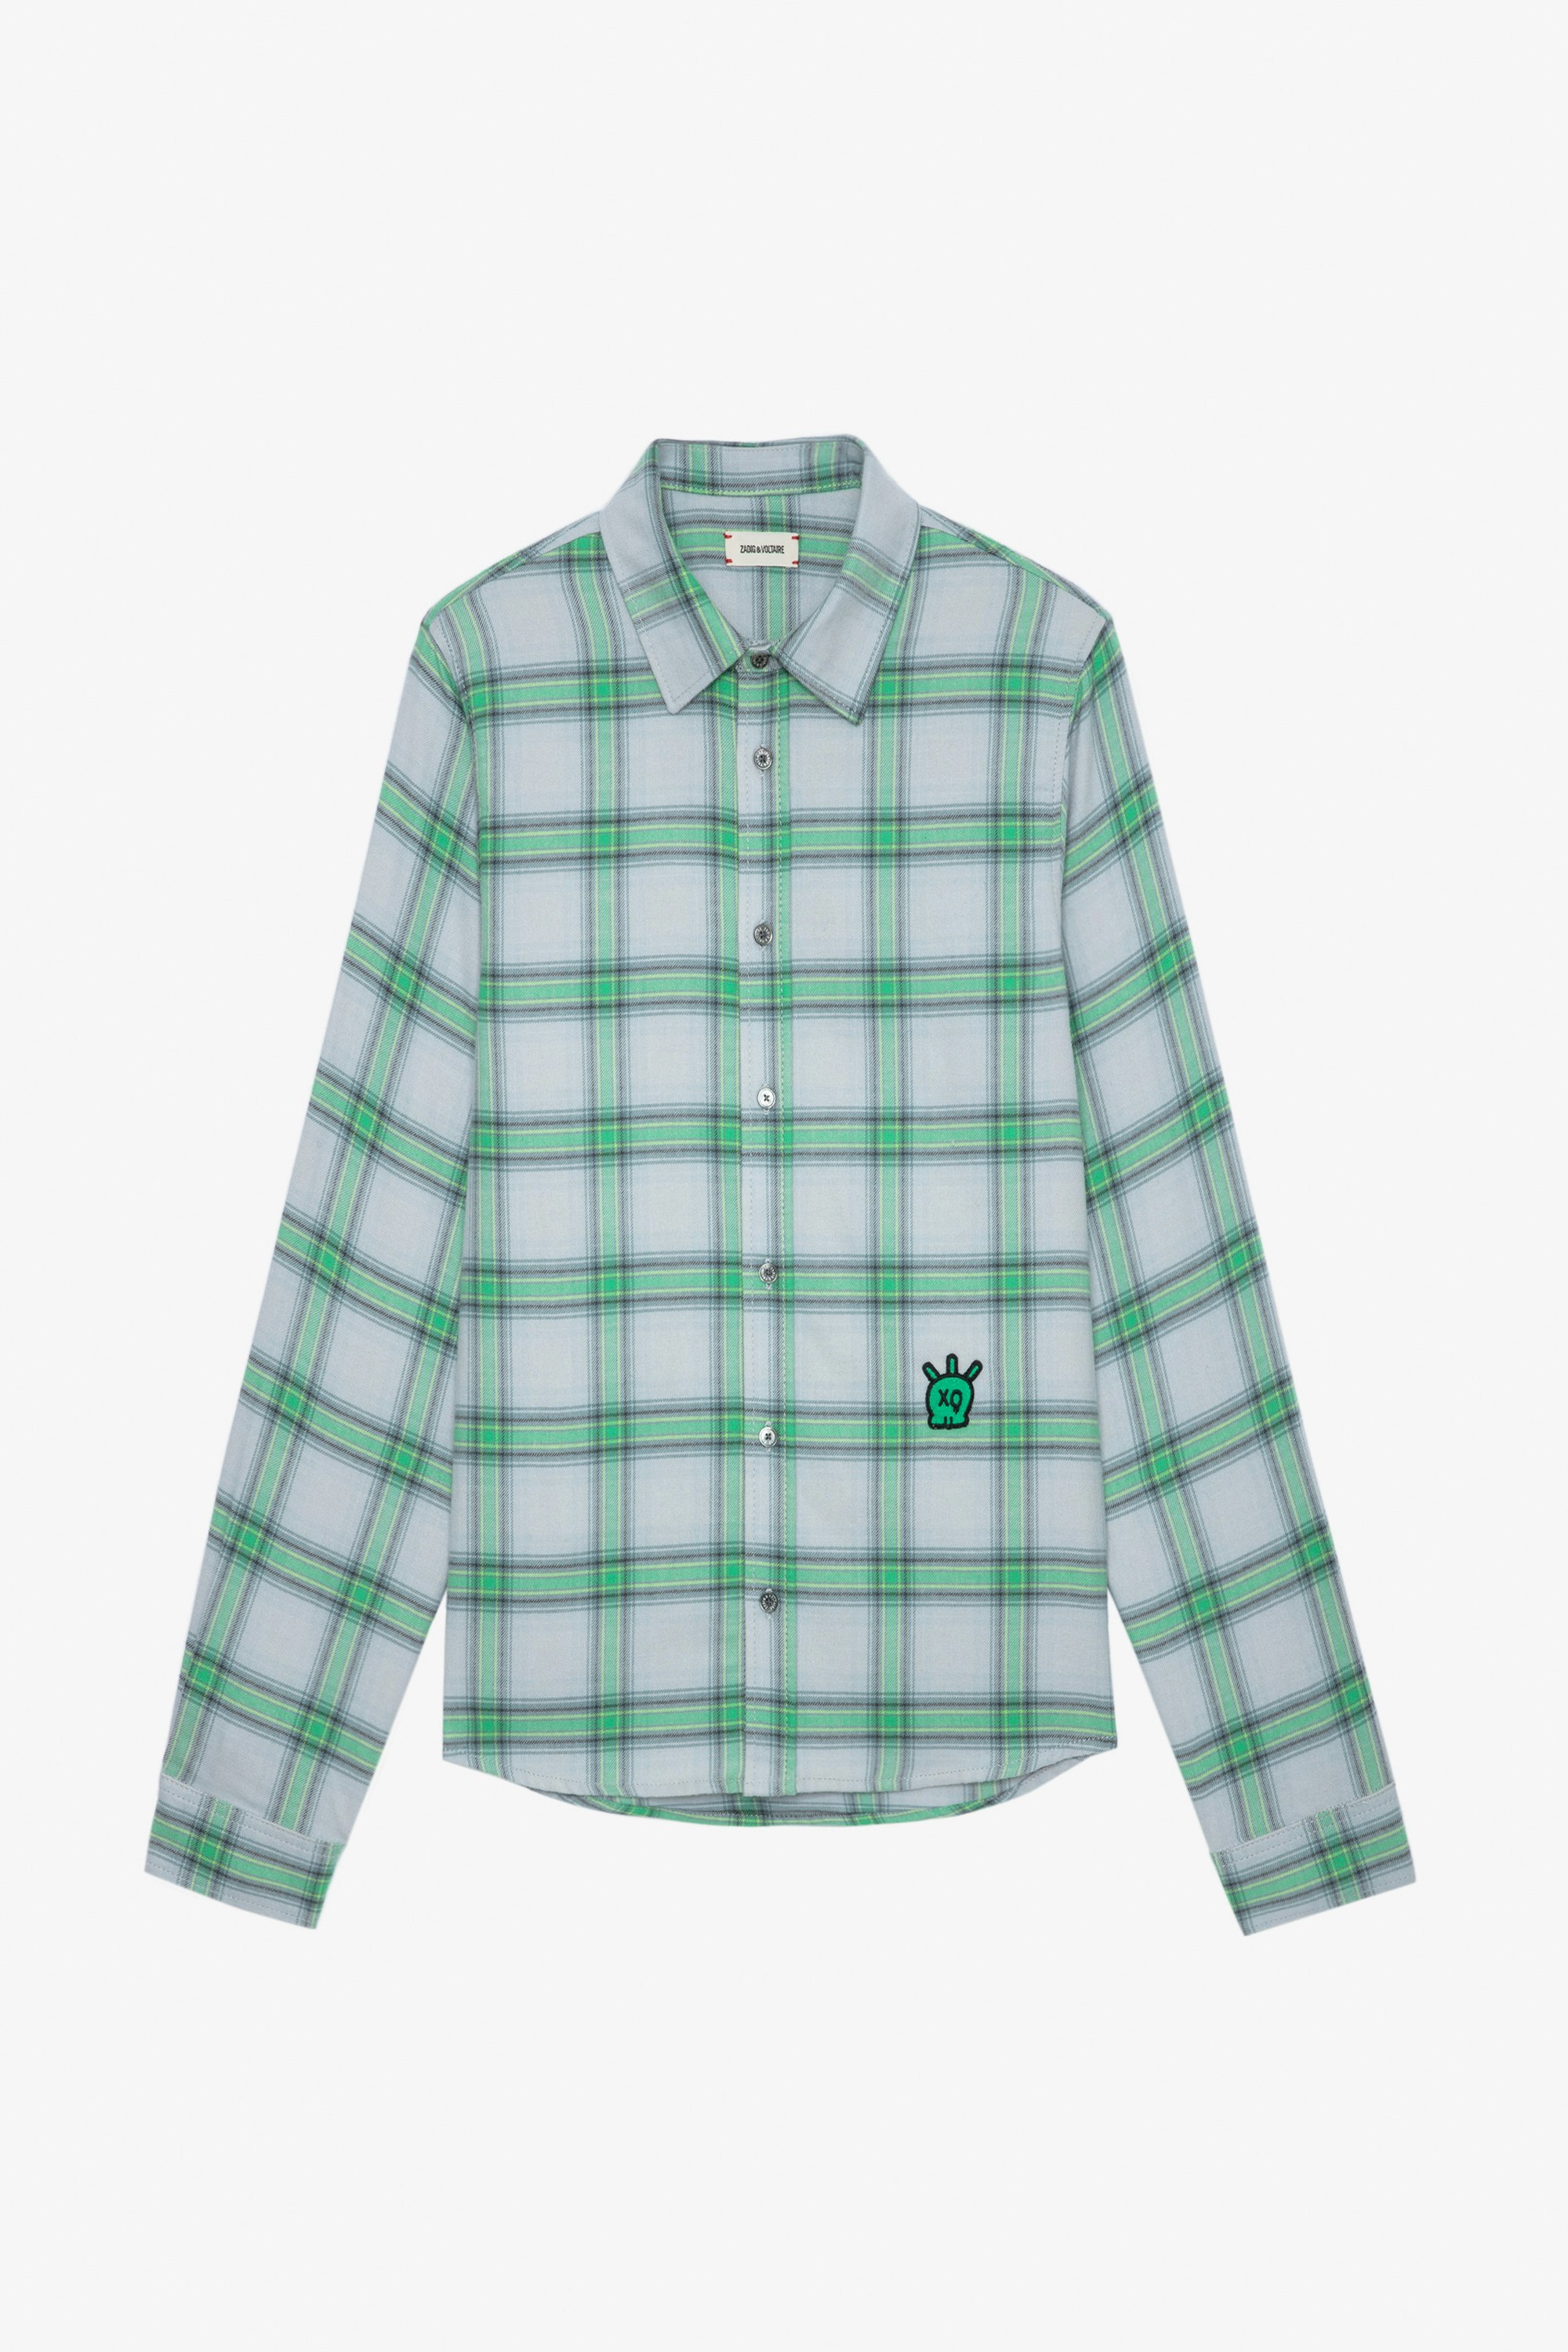 Hemd Stan Skull - Grünes kariertes Herrenhemd aus Baumwolle, verziert mit einem Skull-XO-Patch.